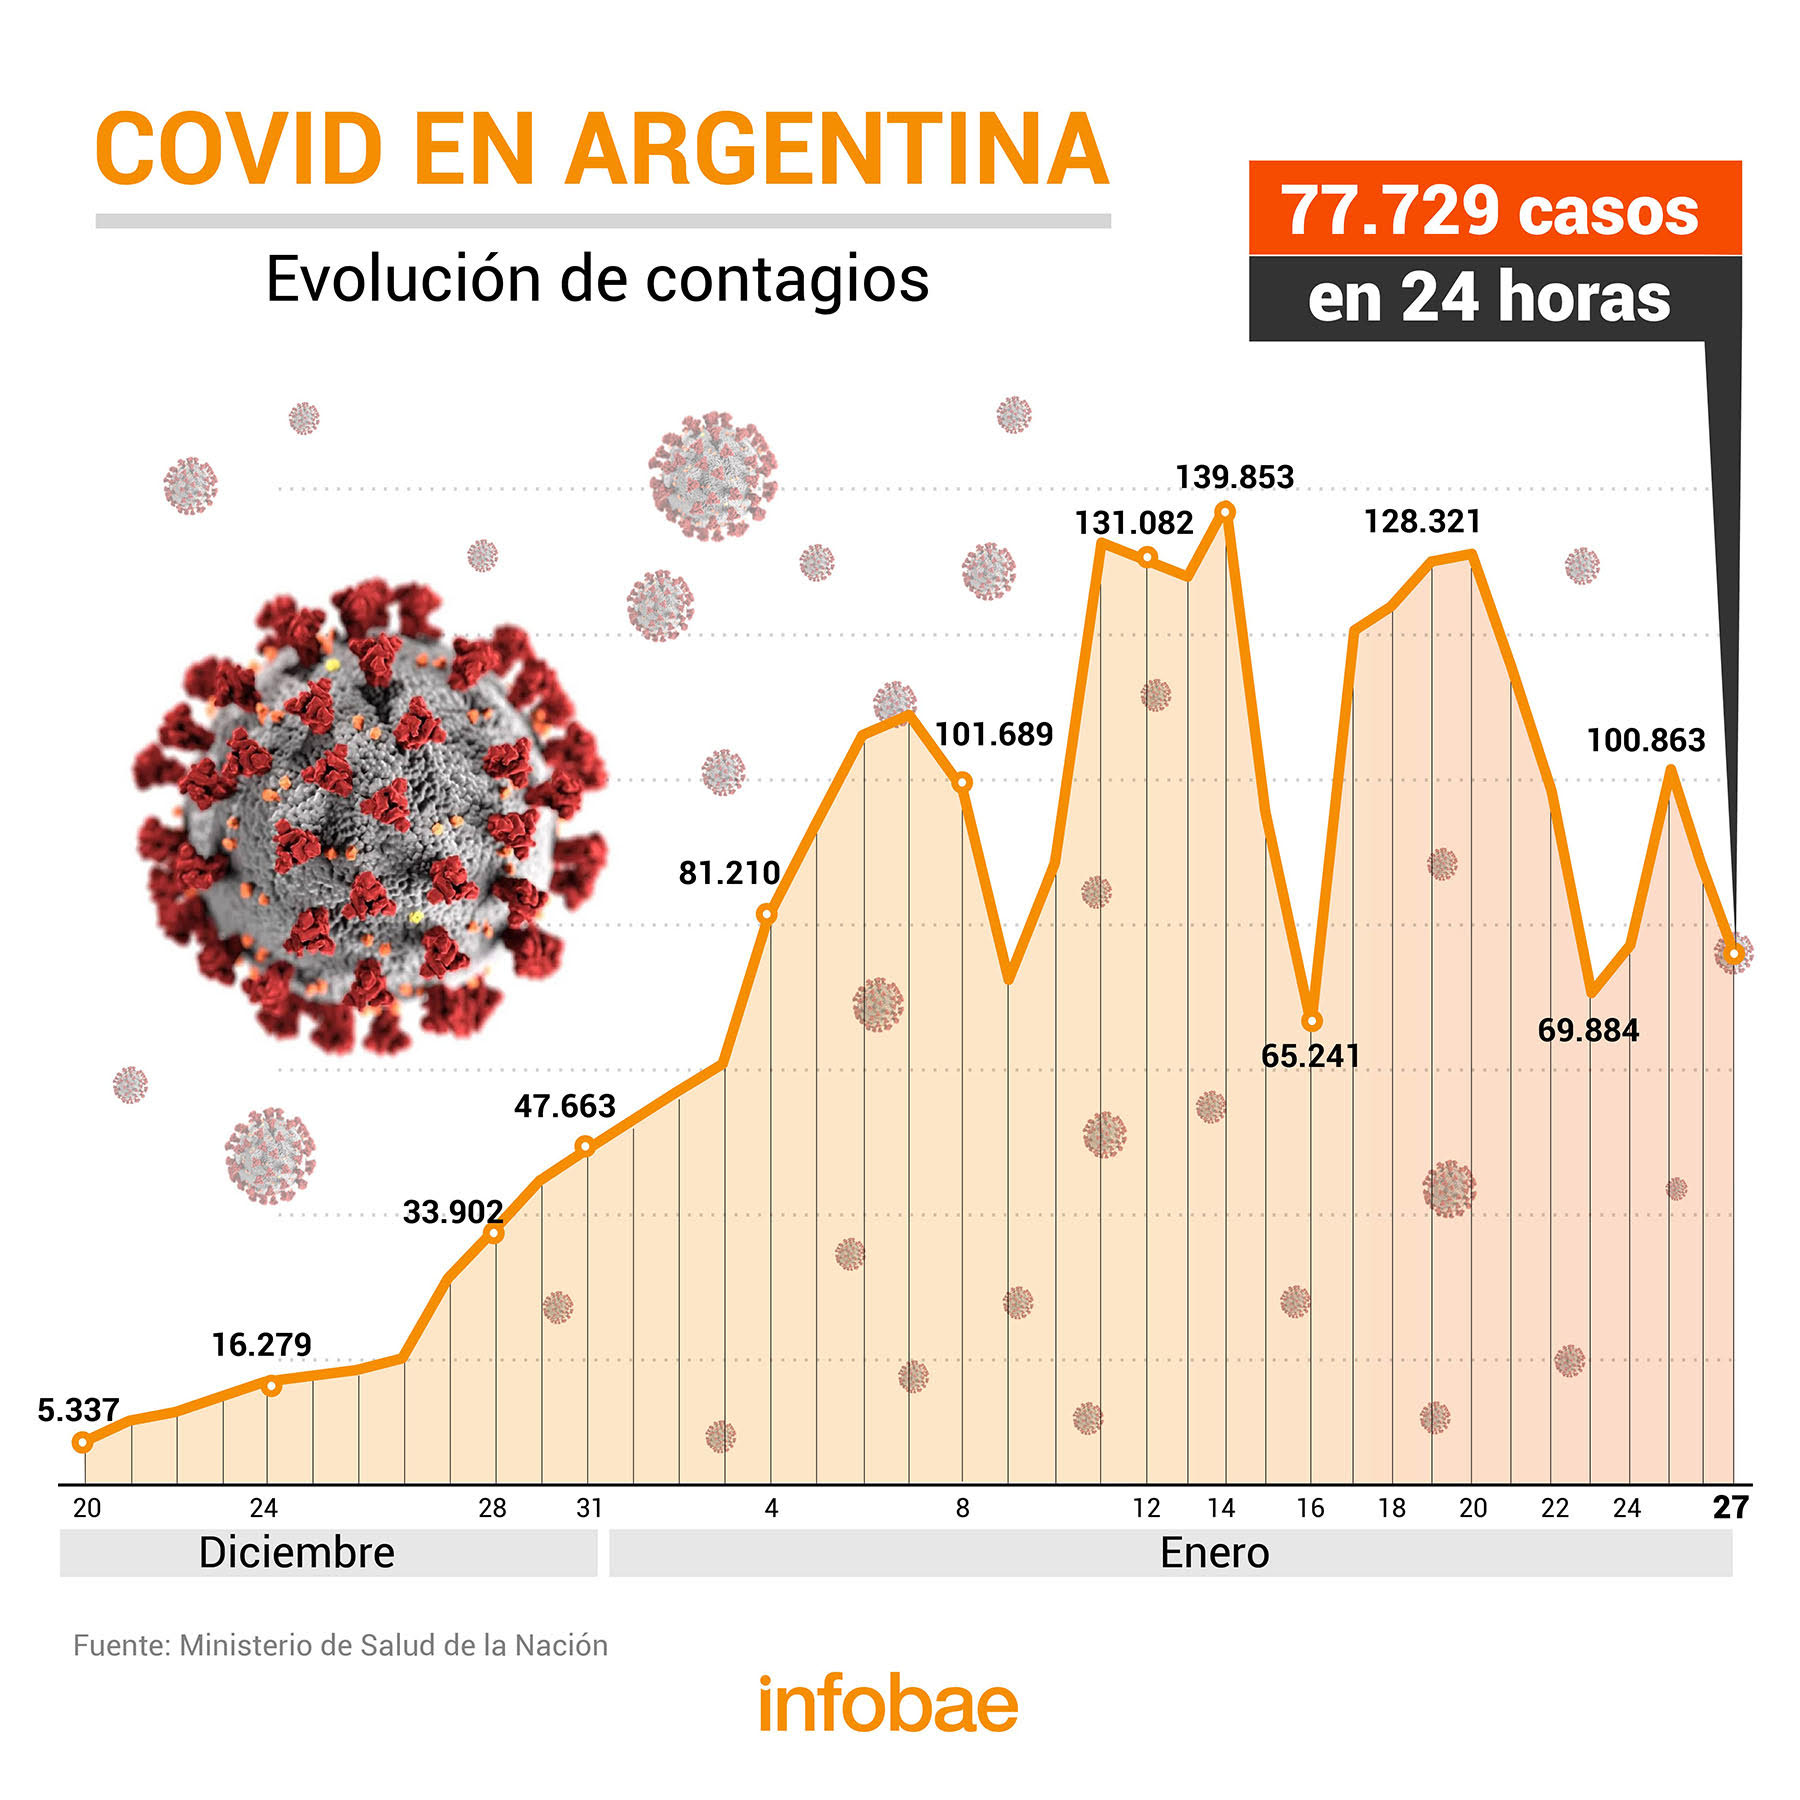 Coronavirus en Argentina: confirmaron 77.729 contagios y 334 muertes, la mayor cifra en más de cinco meses 